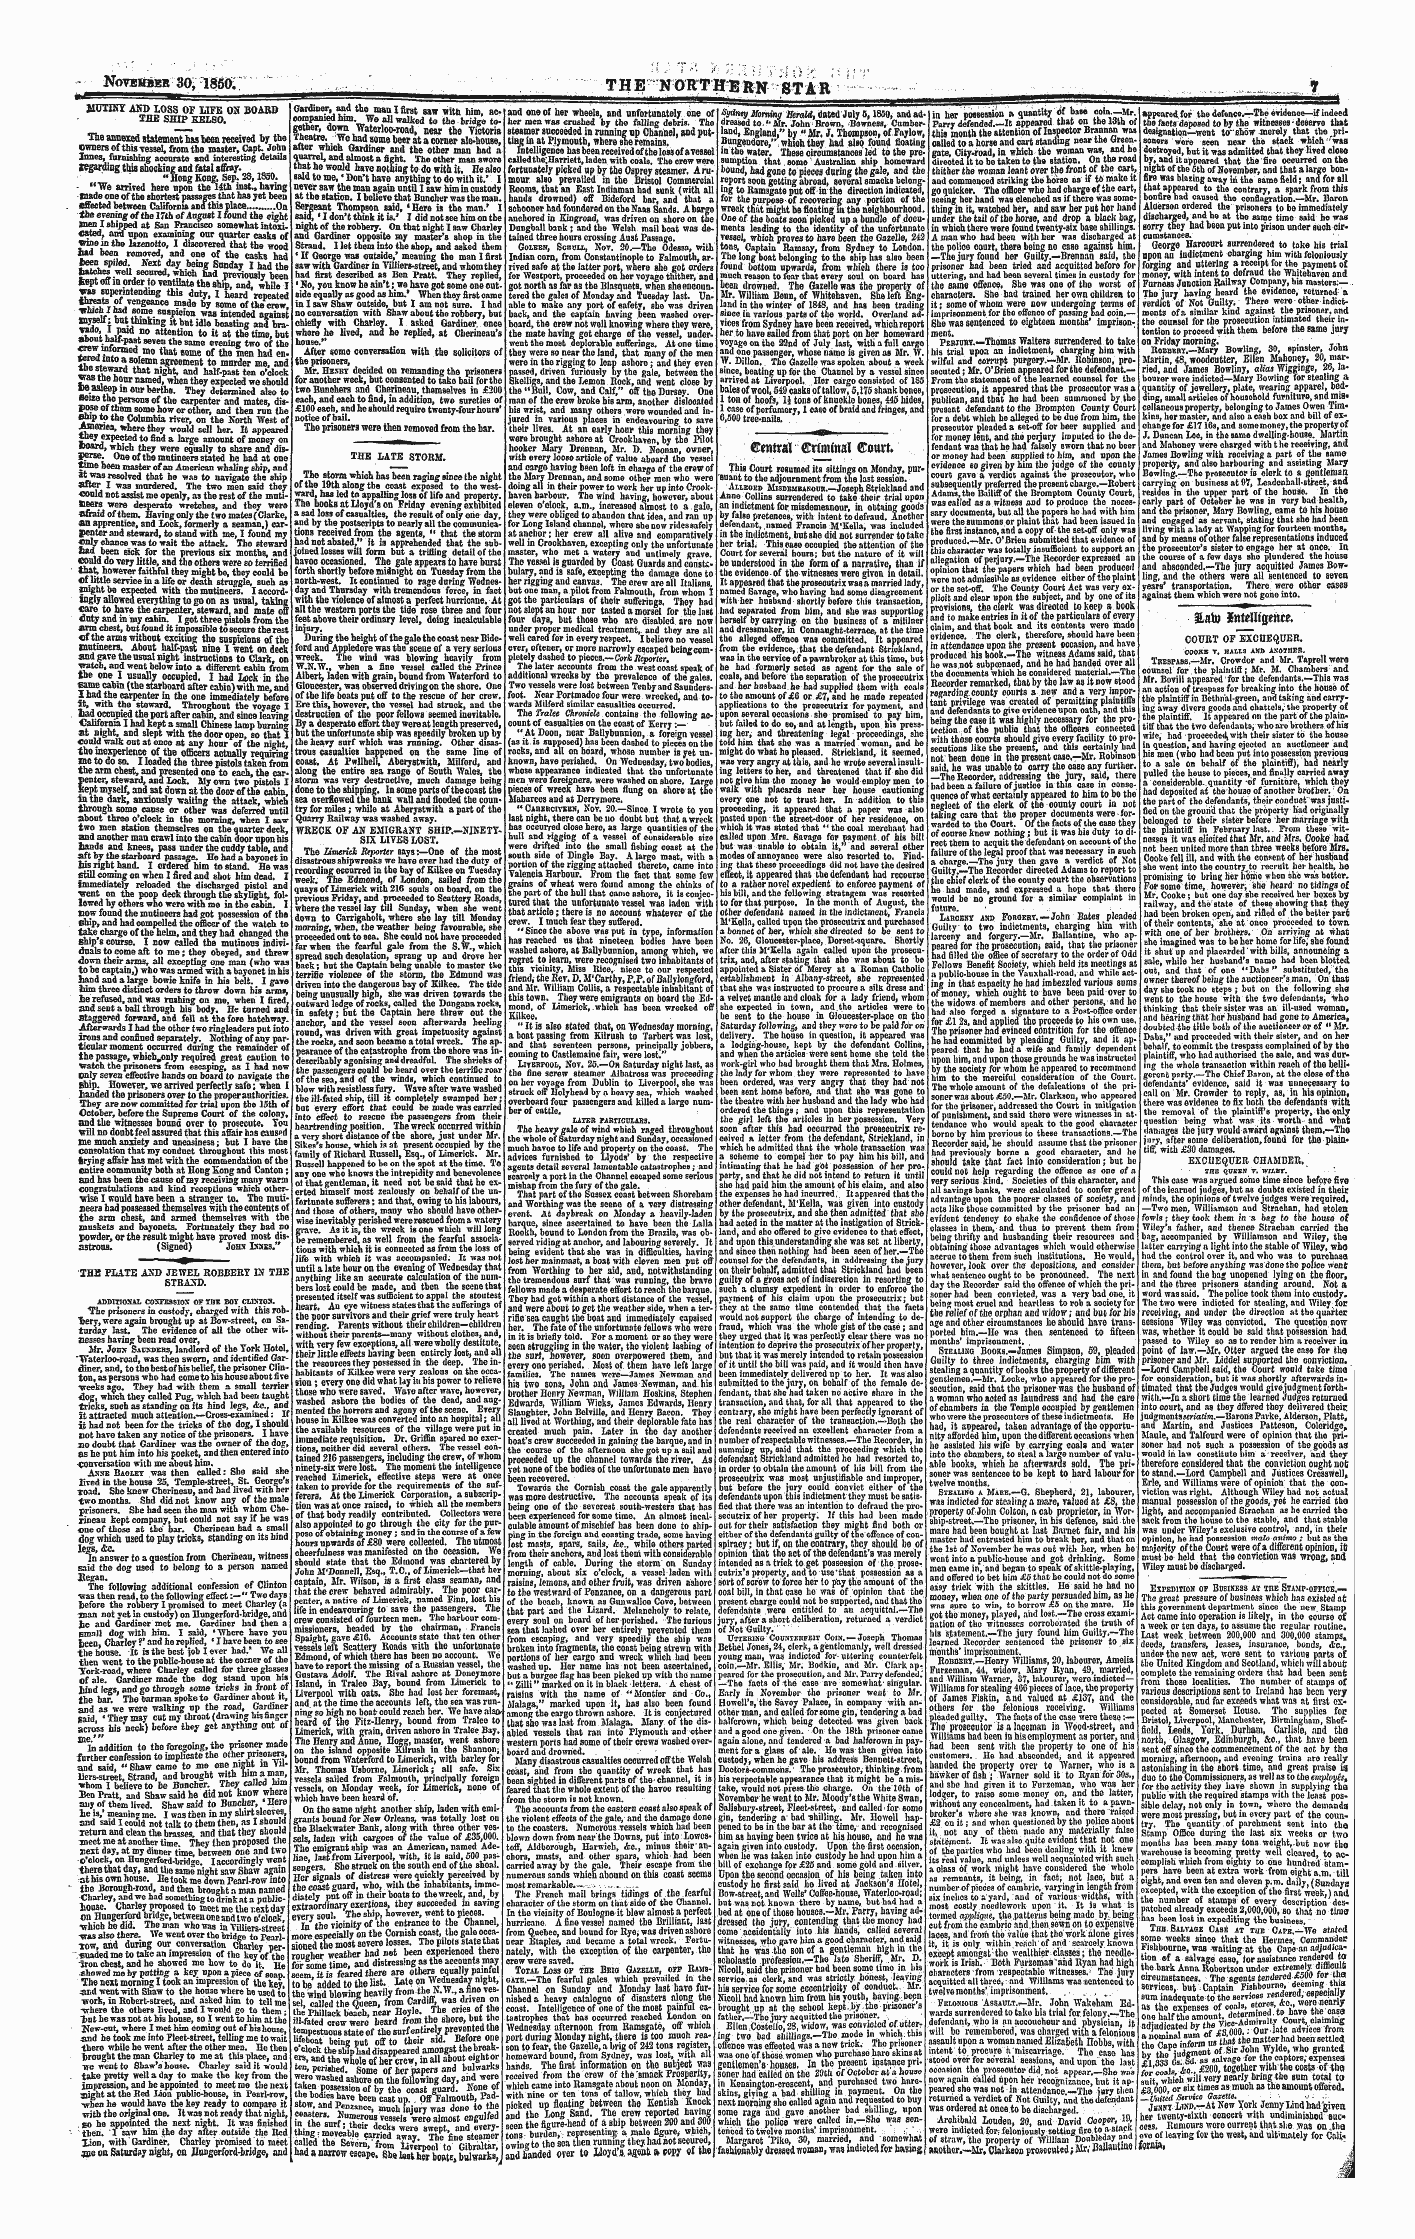 Northern Star (1837-1852): jS F Y, 1st edition - ©Mtral ©R(Mmar©Ott«.